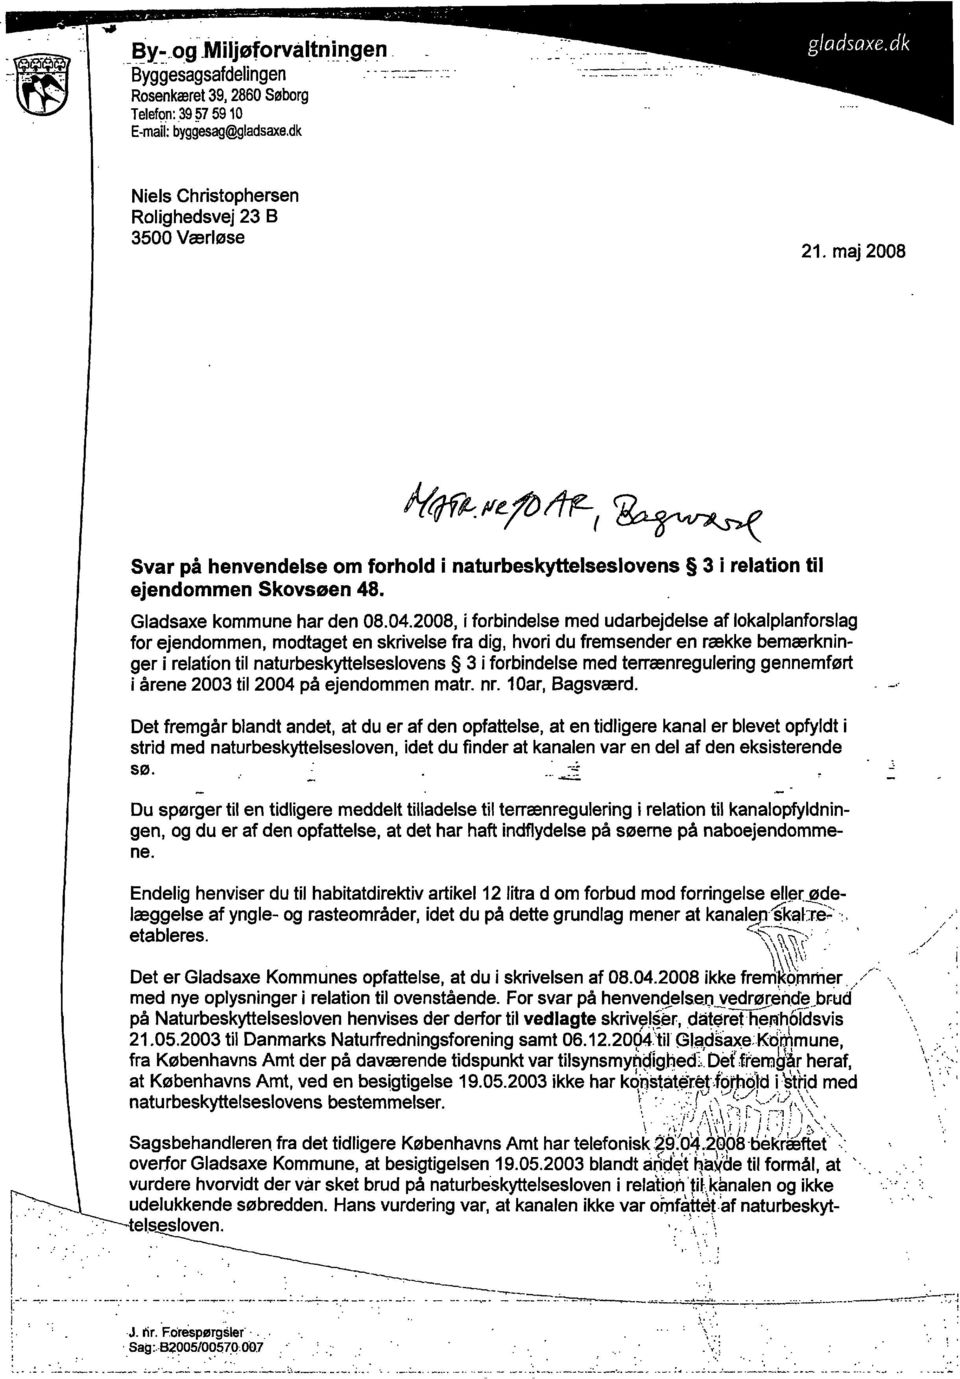 2008, i forbindelse med udarbejdelse af lokalplanforslag for ejendommen, modtaget en skrivelse fra dig, hvori du fremsender en række bemærkninger i relation til naturbeskyttelseslovens 3 i